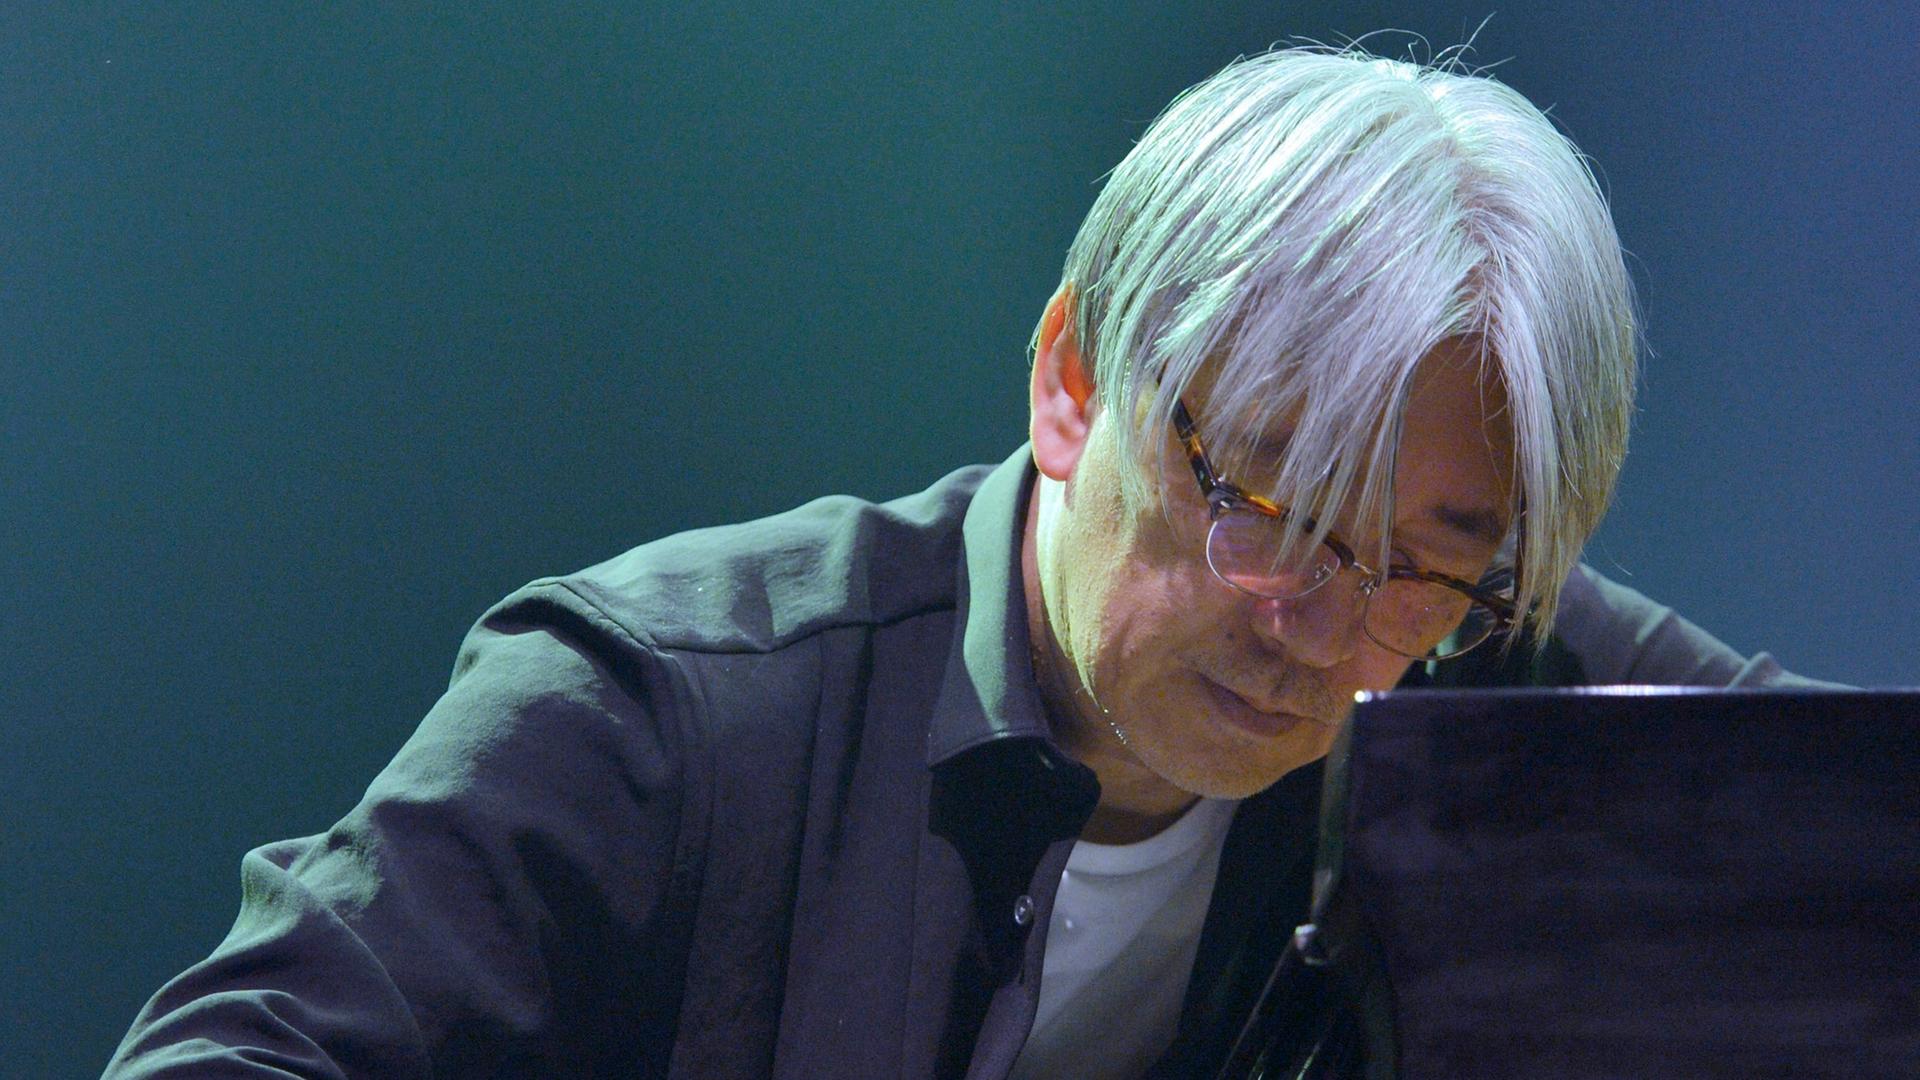 Der Pianist und Komponiest Ryuichi Sakamoto spielt auf einem Konzert Piano. Er hat den Kopf mit grauen Haaren weit an das Instrument hervorbegeugt. 